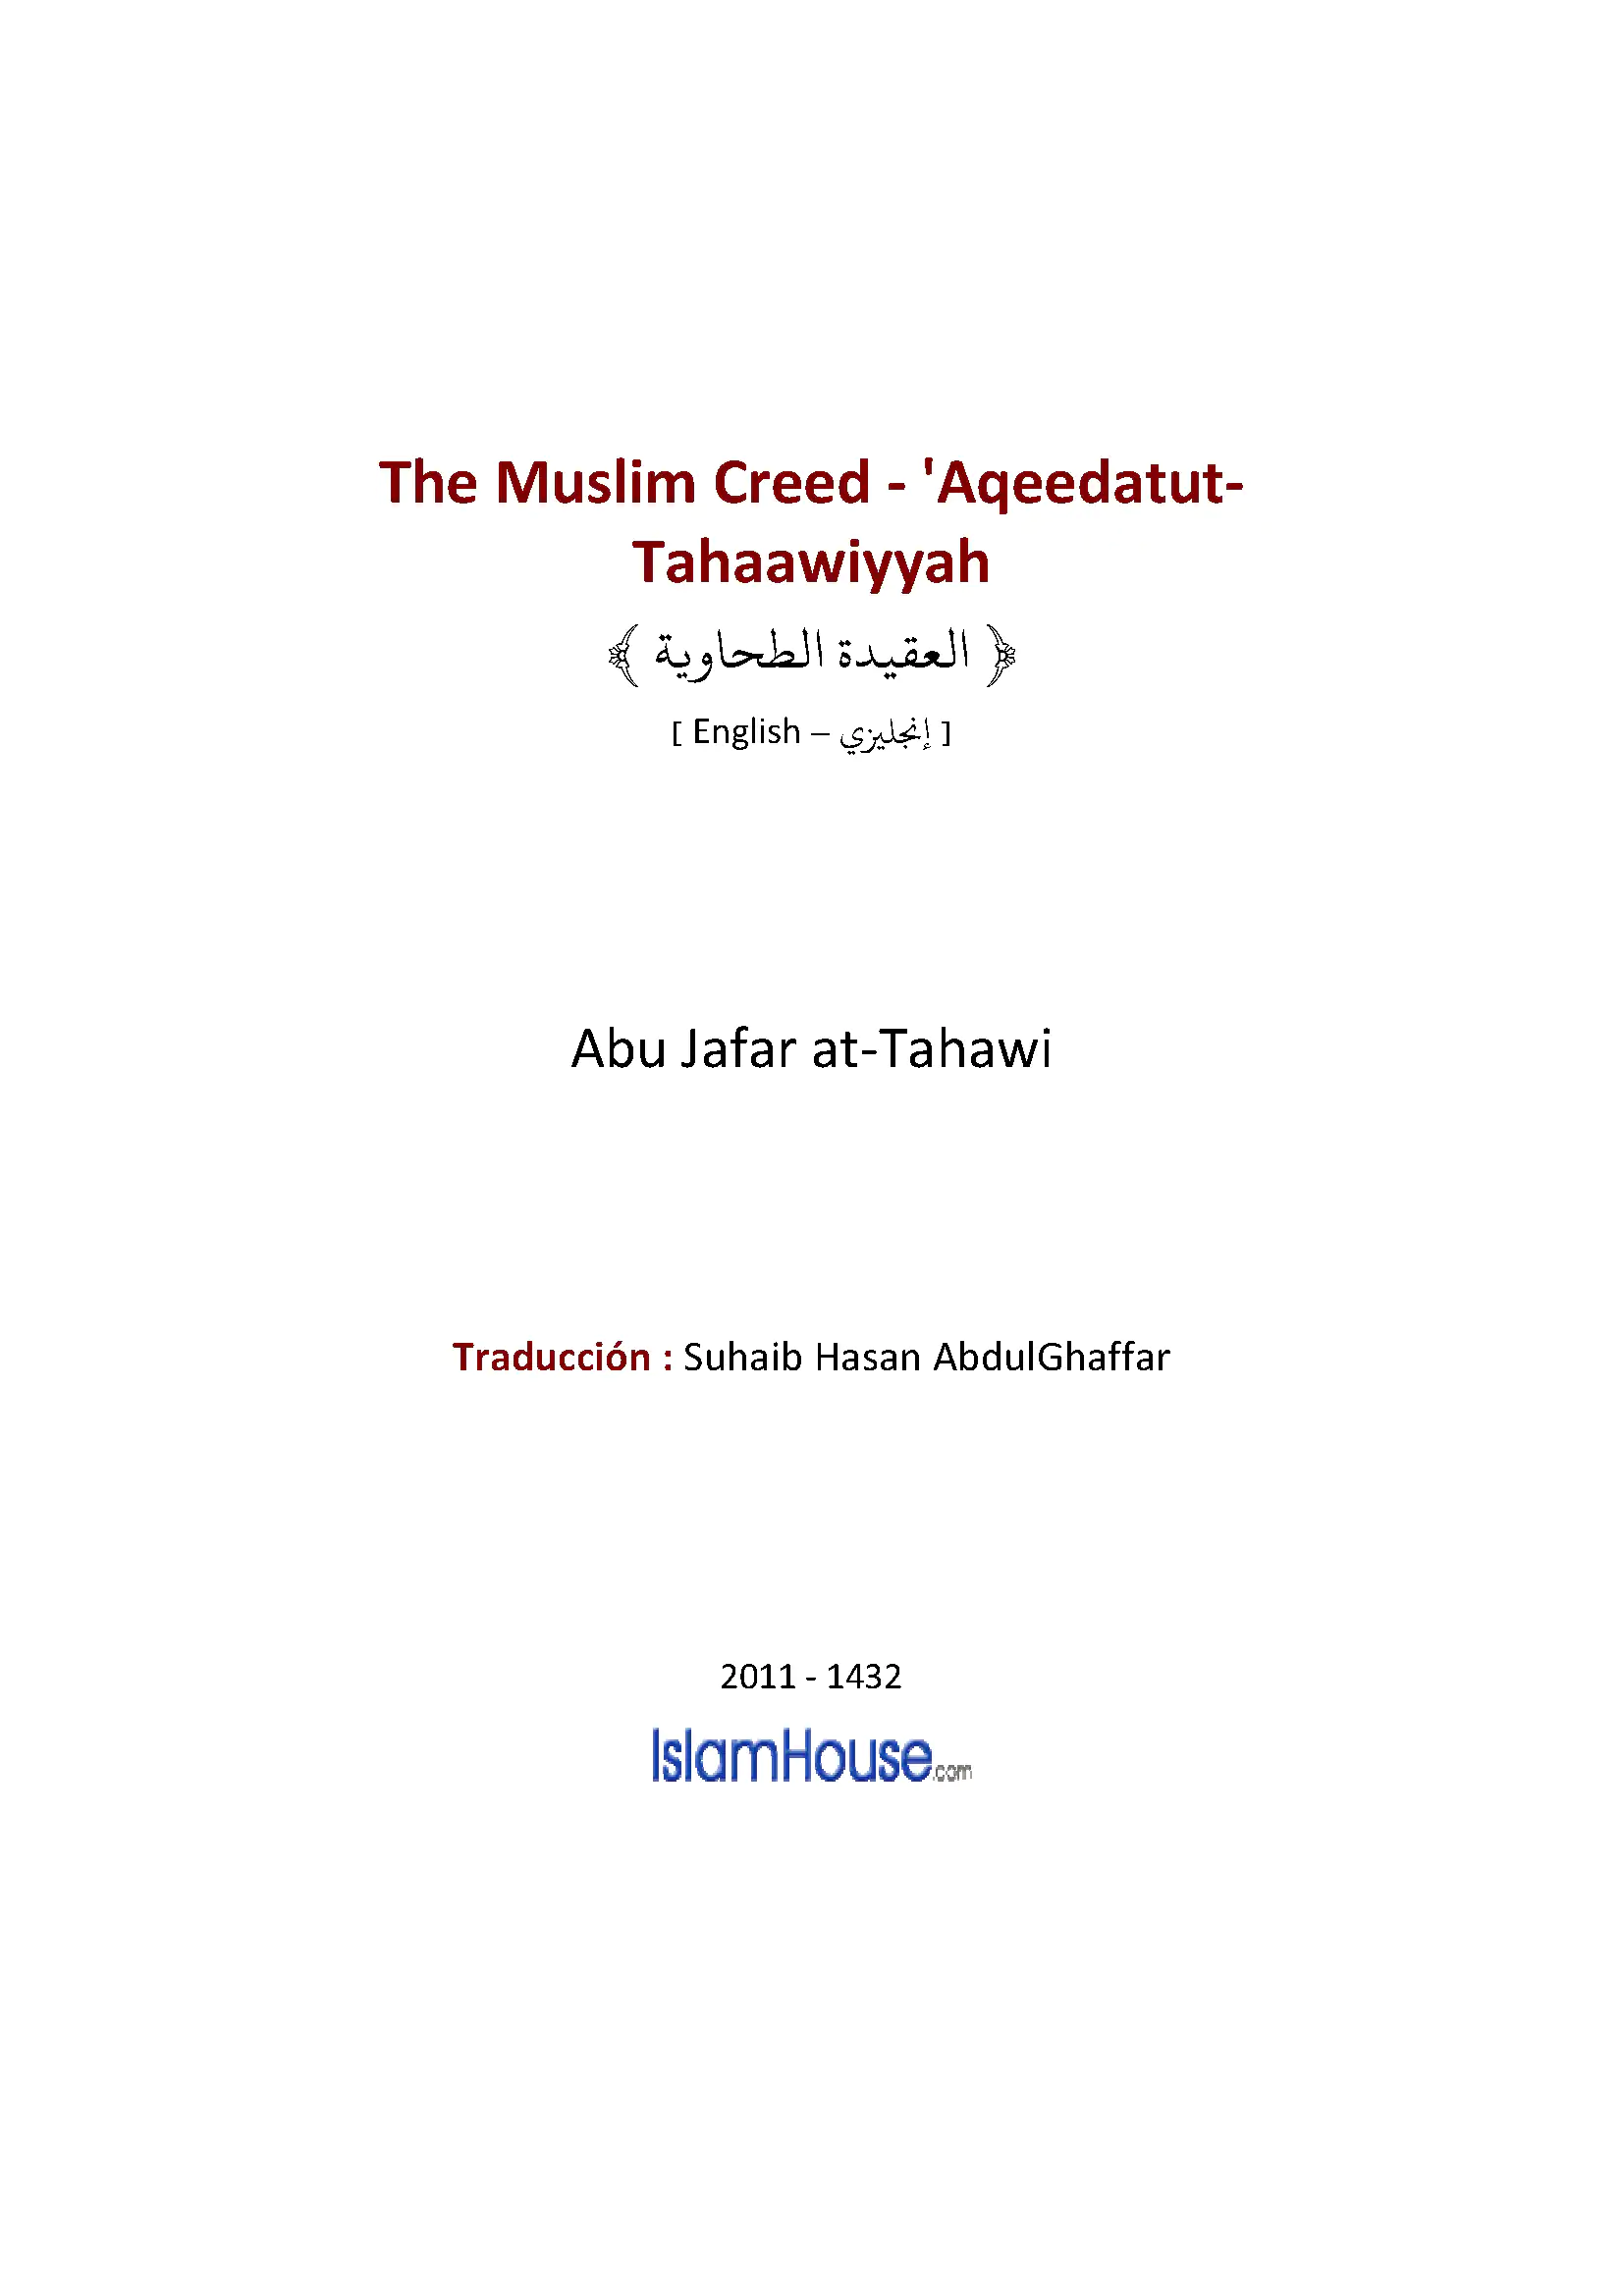 Islamic Creed by Imam Tahawy